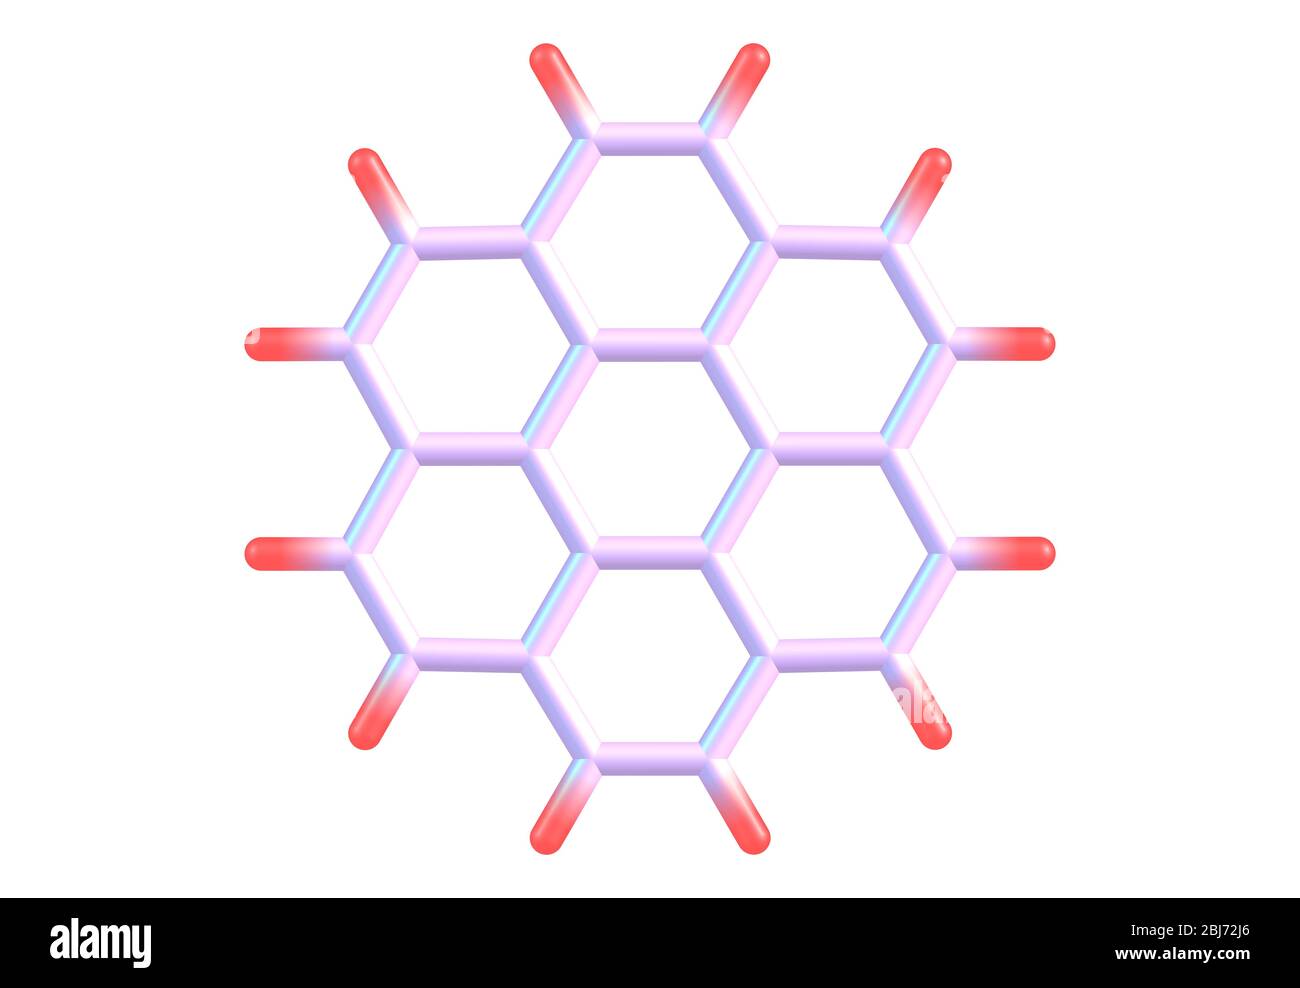 Coronol (Superbenzol) ist ein polyzyklischer aromatischer Kohlenwasserstoff, der aus sechs peri-fusionierten Benzolringen besteht Stockfoto